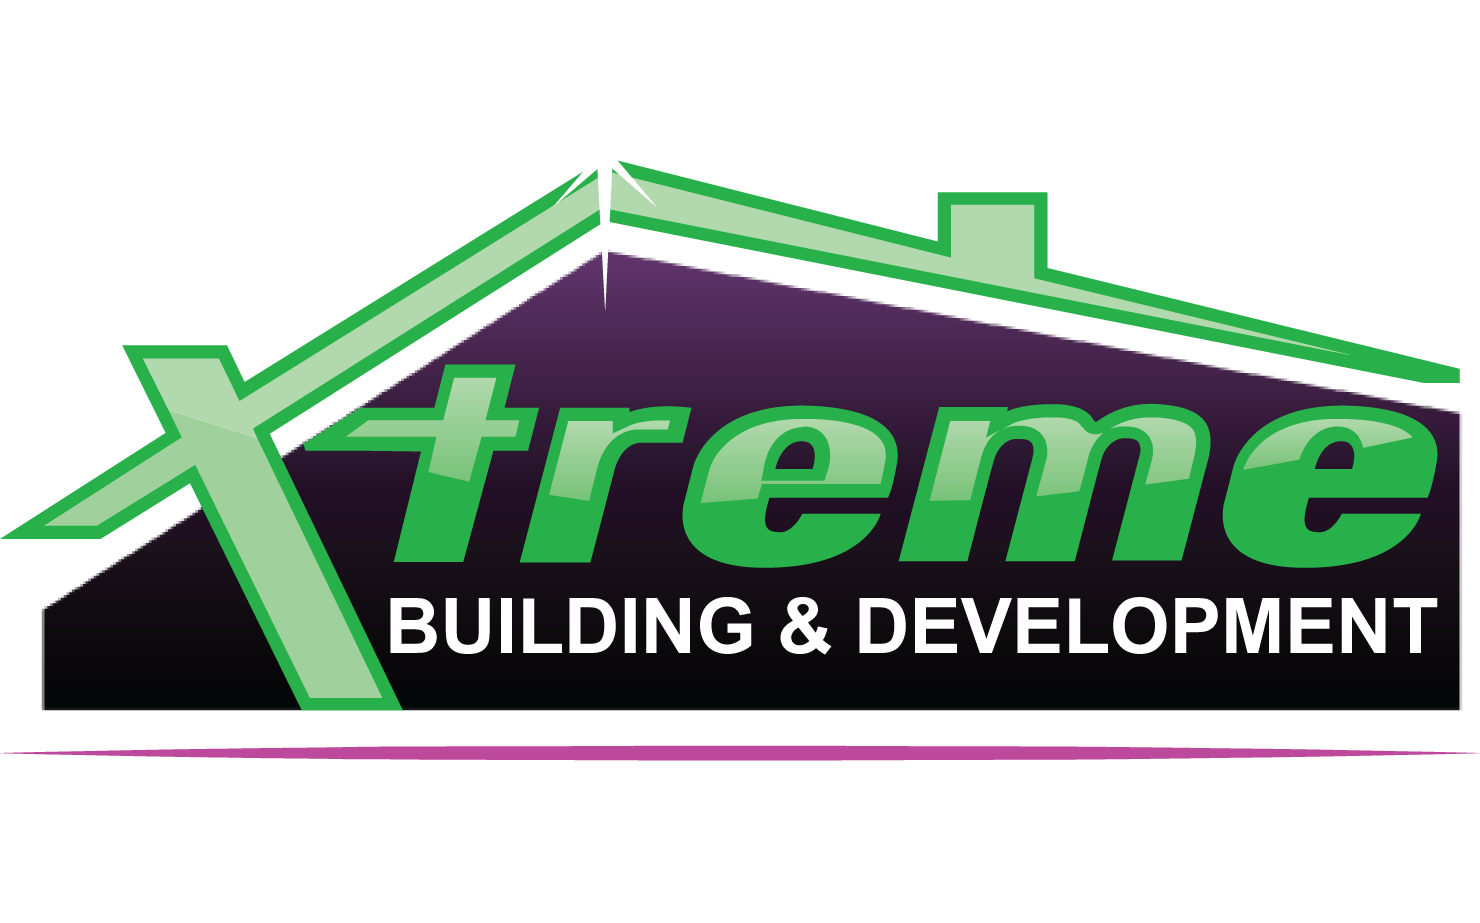 Xtreme Building & Development